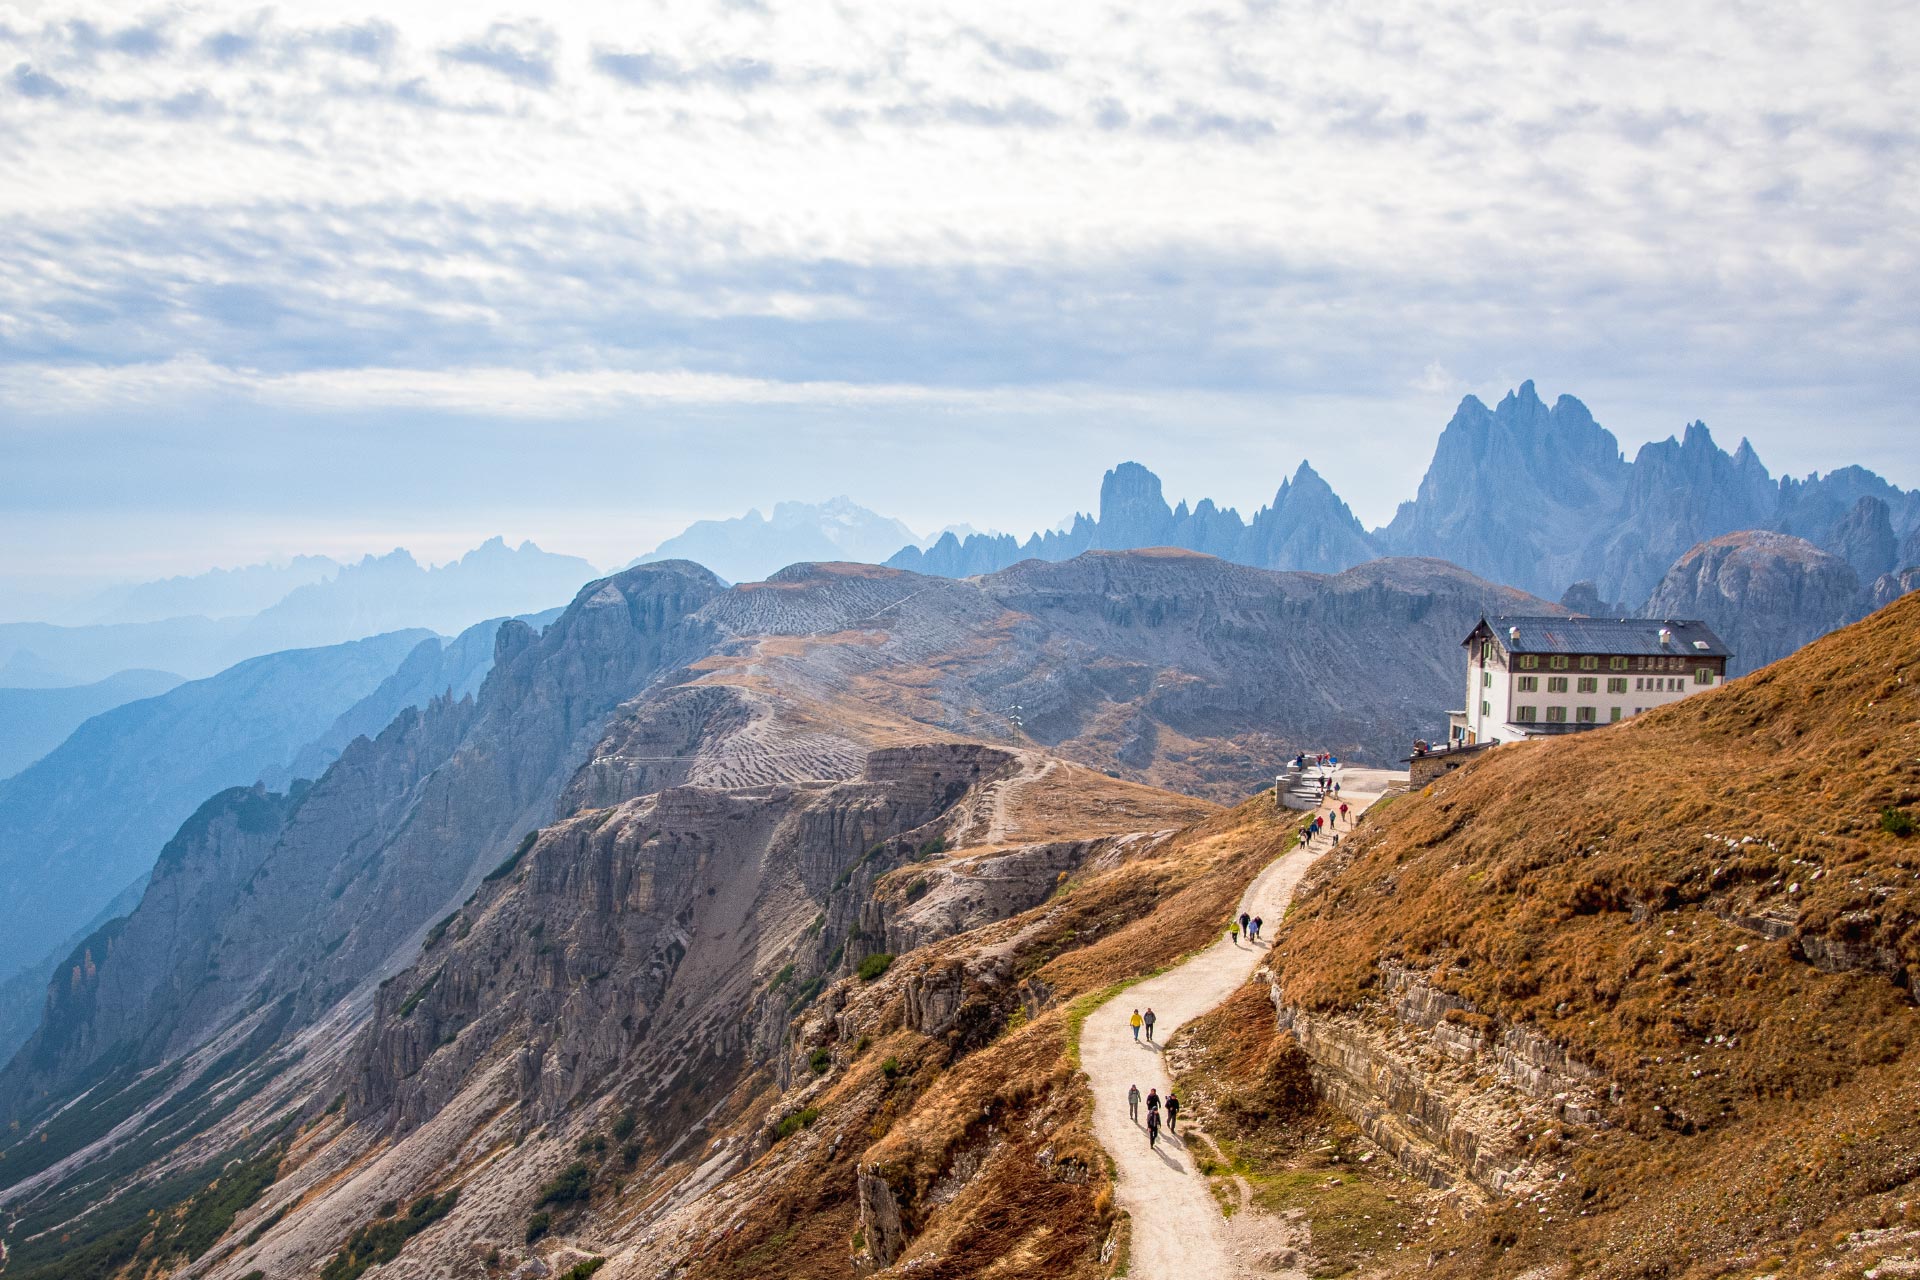 Startpunkt der Wanderung ist die Auronzo Hütte auf 2.330 Höhenmetern